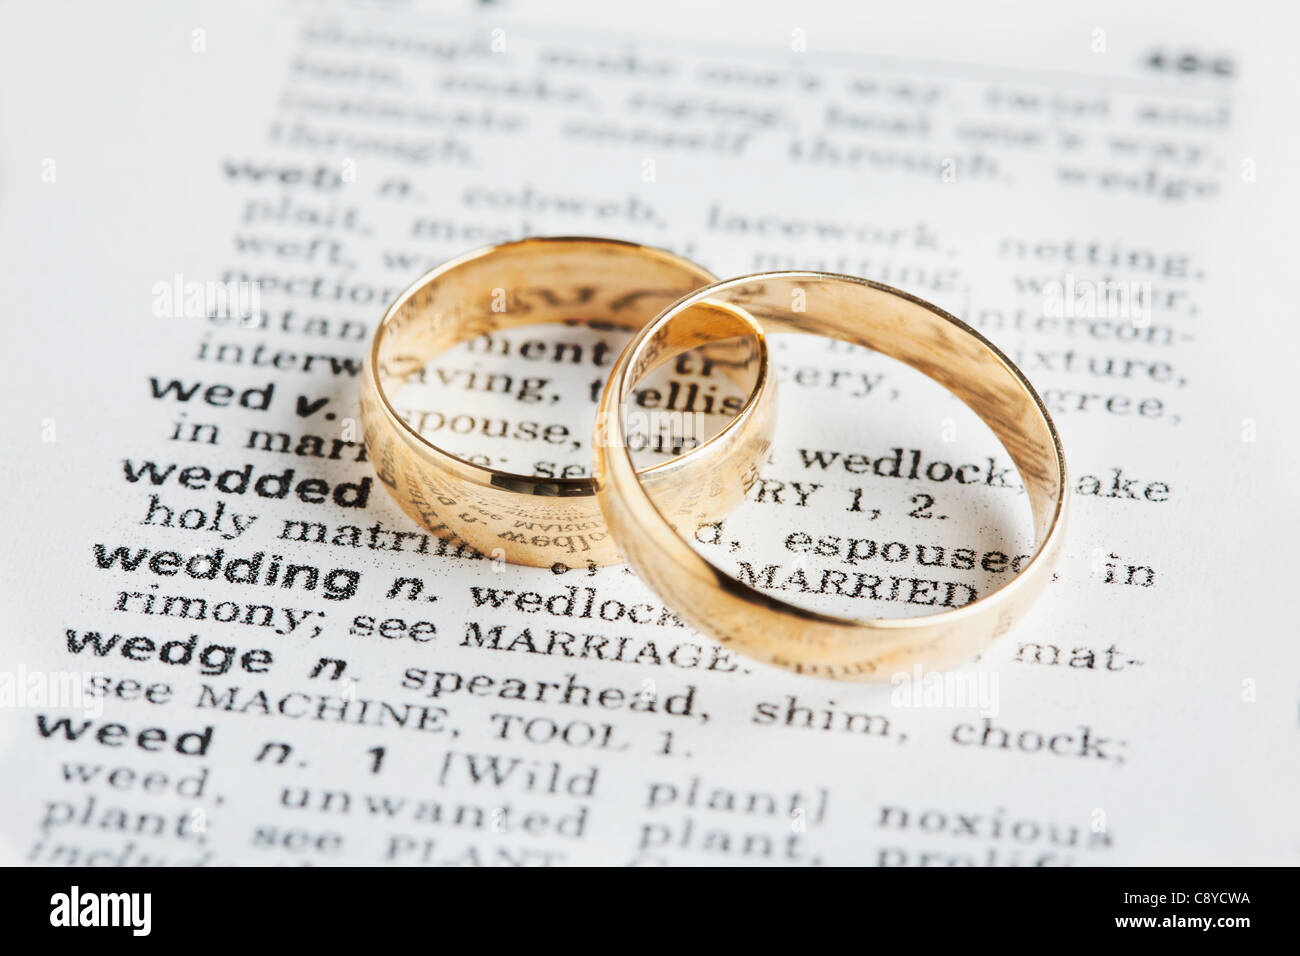 États-unis, Illinois, Metamora, deux anneaux de mariage sur dictionary Banque D'Images